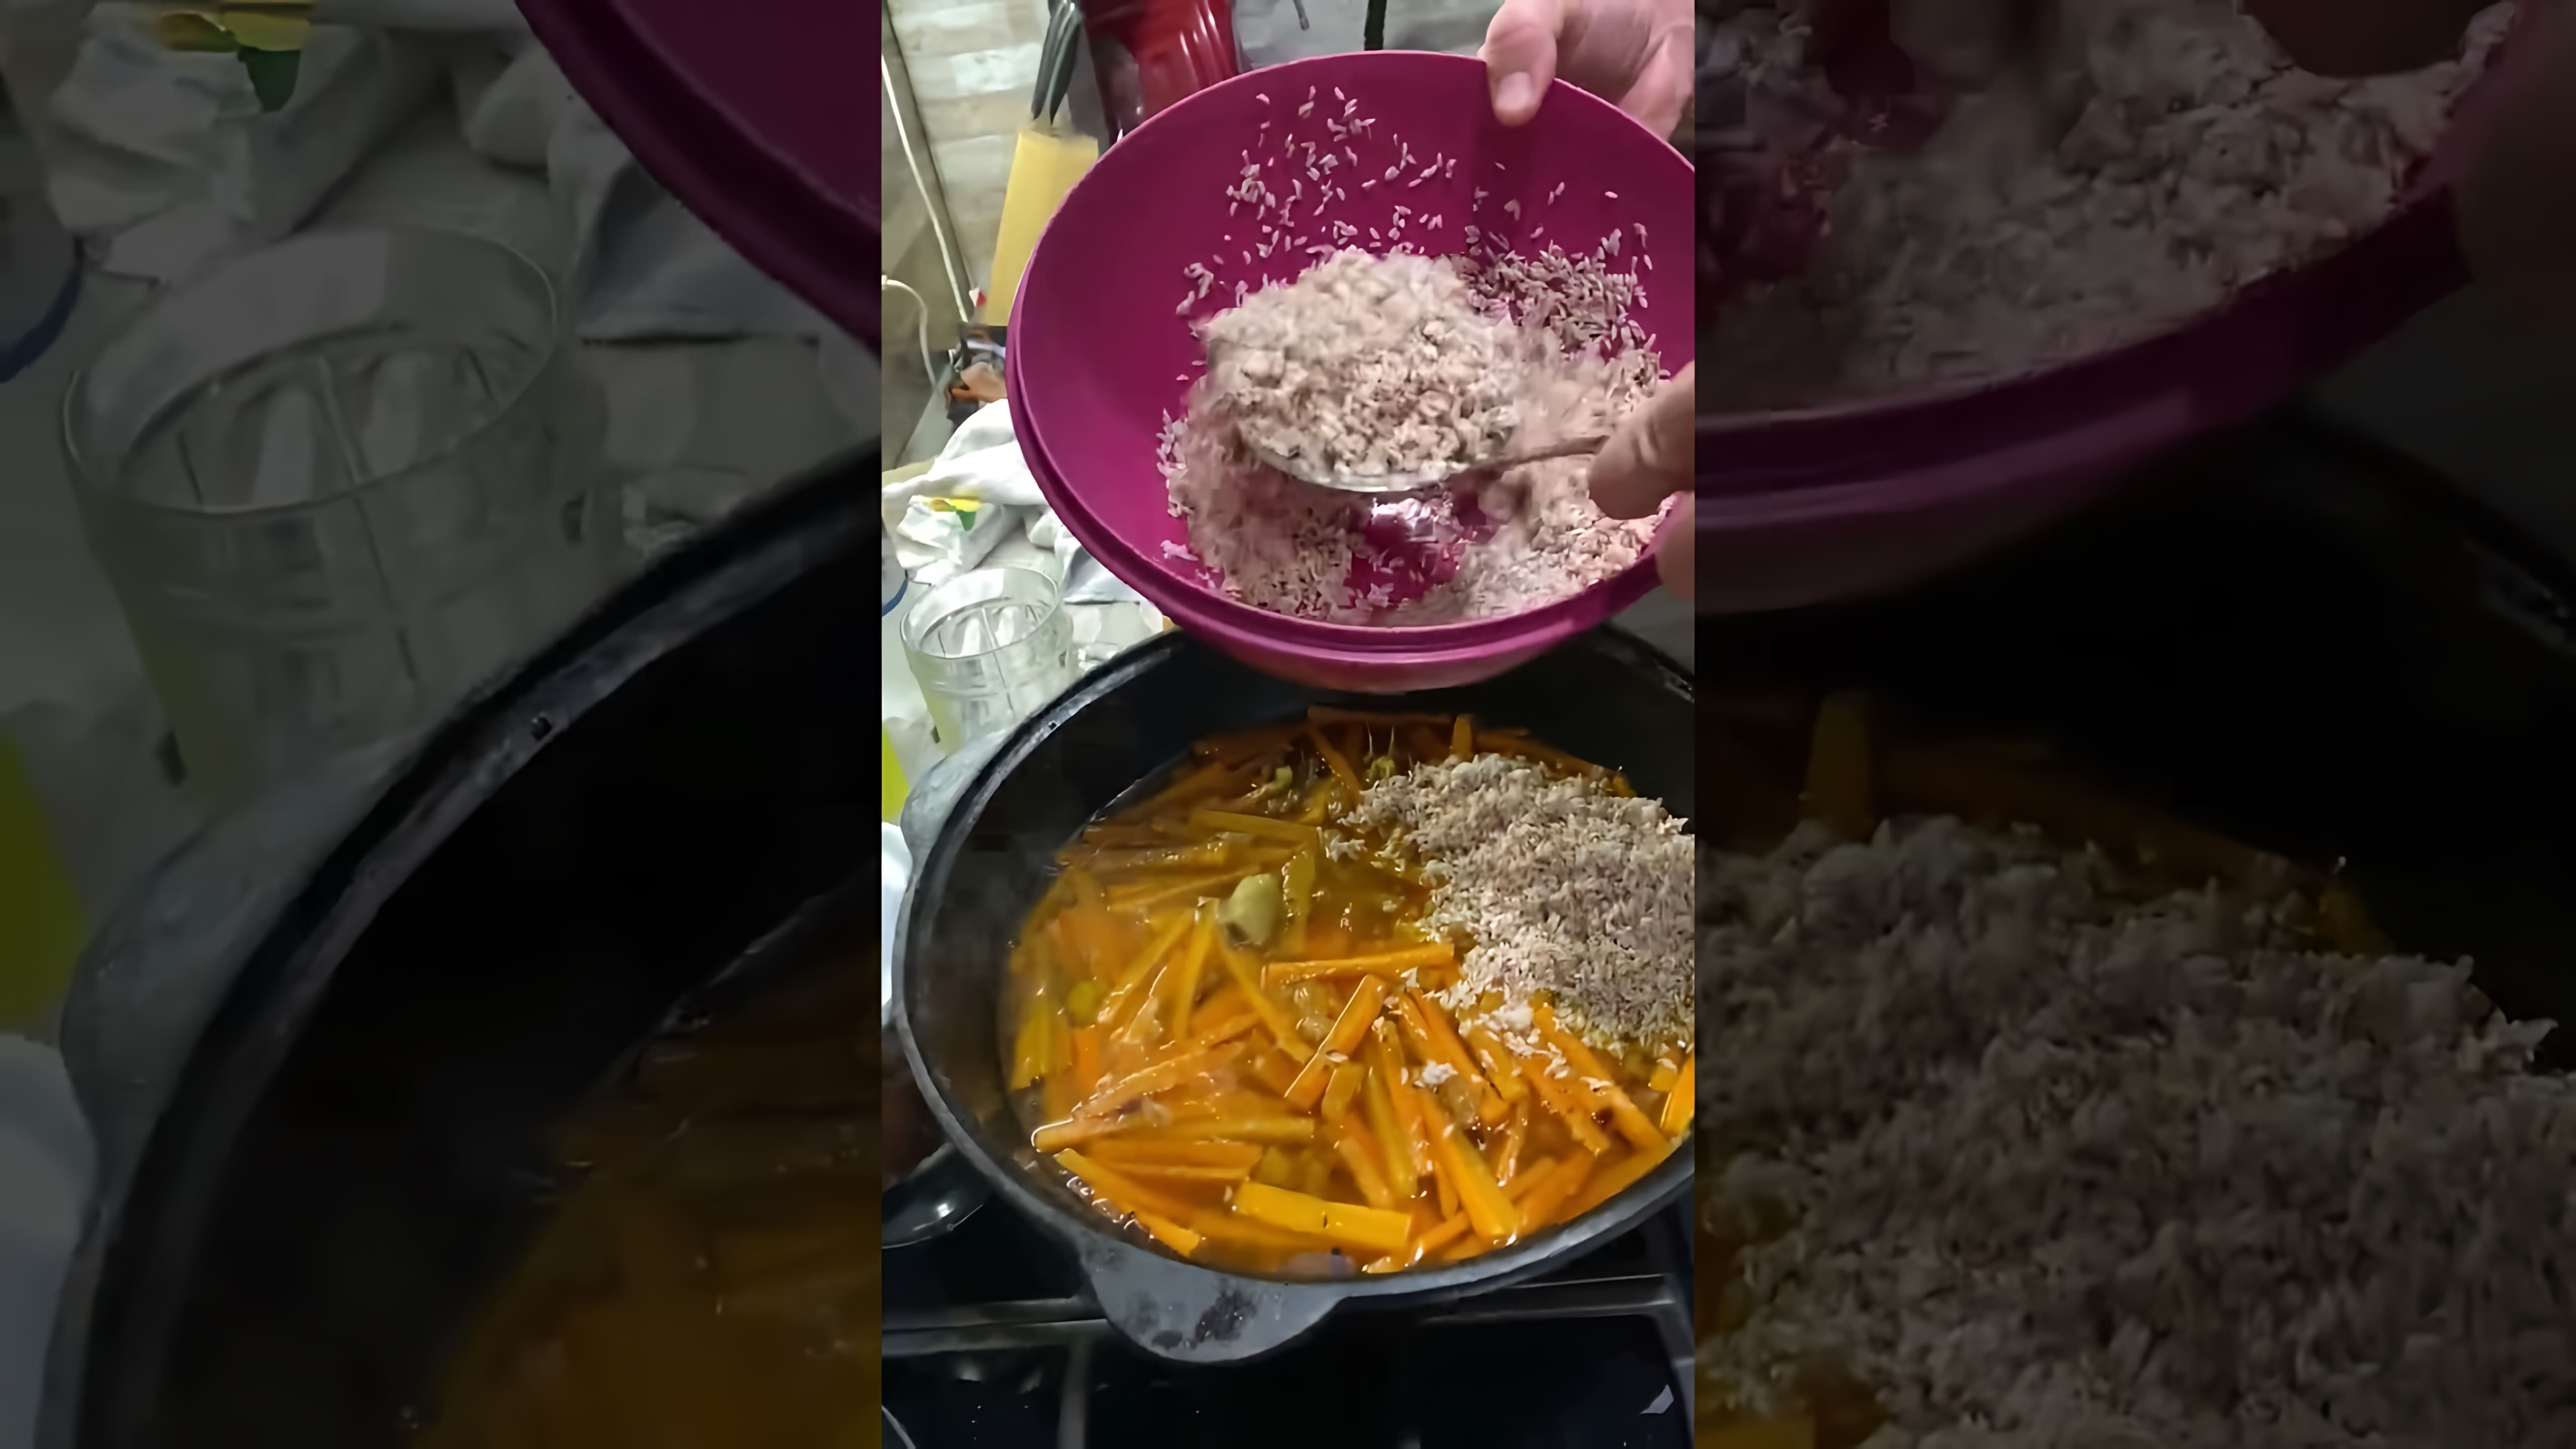 В этом видео-ролике будет представлен рецепт приготовления плова из бурого риса, который является традиционным блюдом узбекской кухни